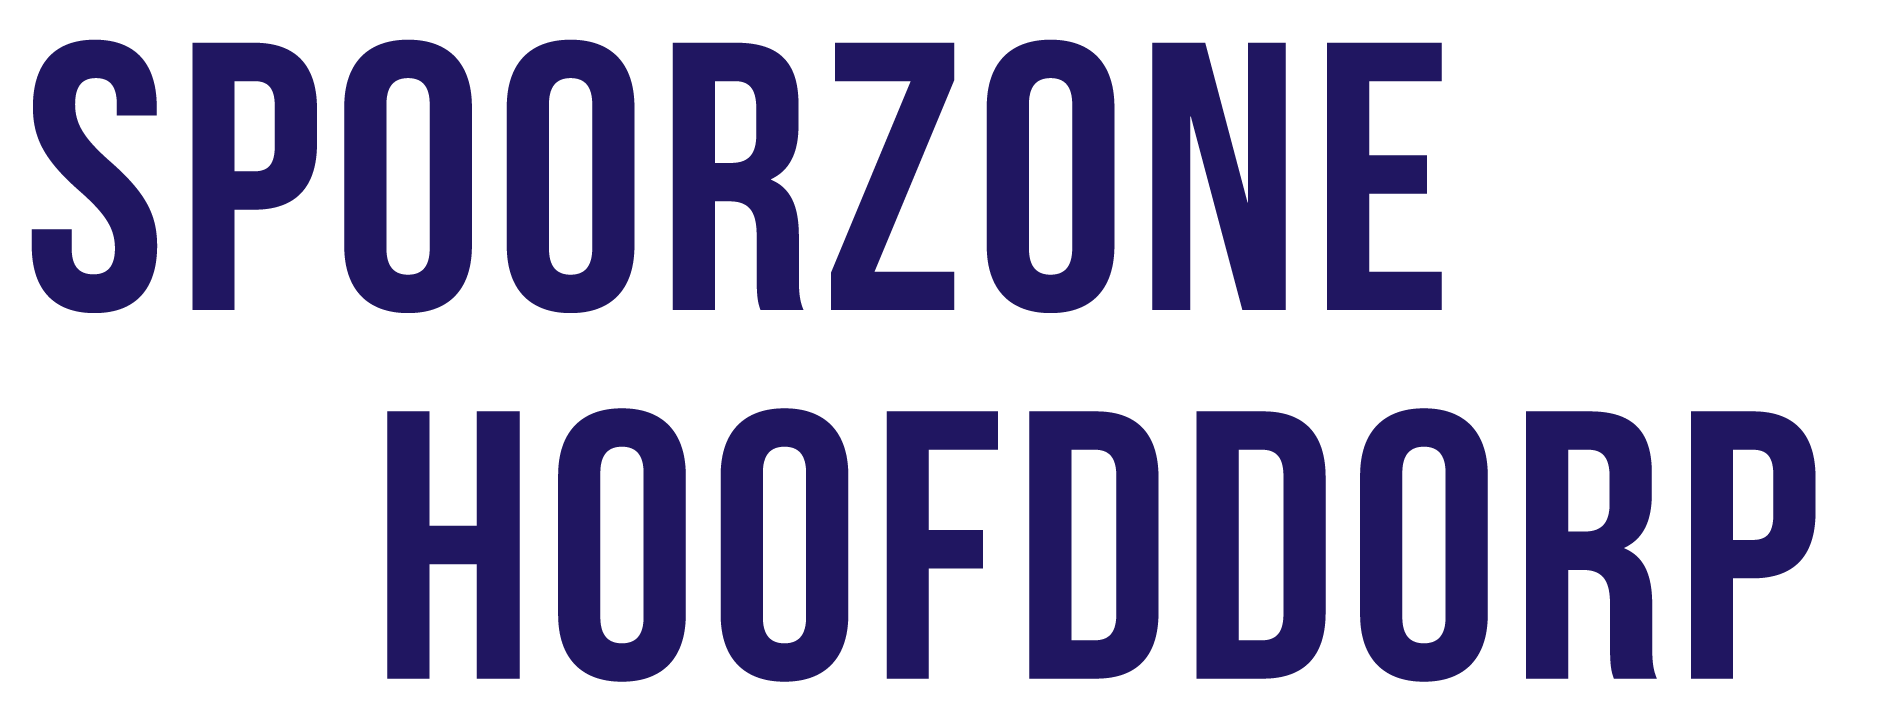 Logo van Spoorzone Hoofddorp dat doorverwijst naar de homepage